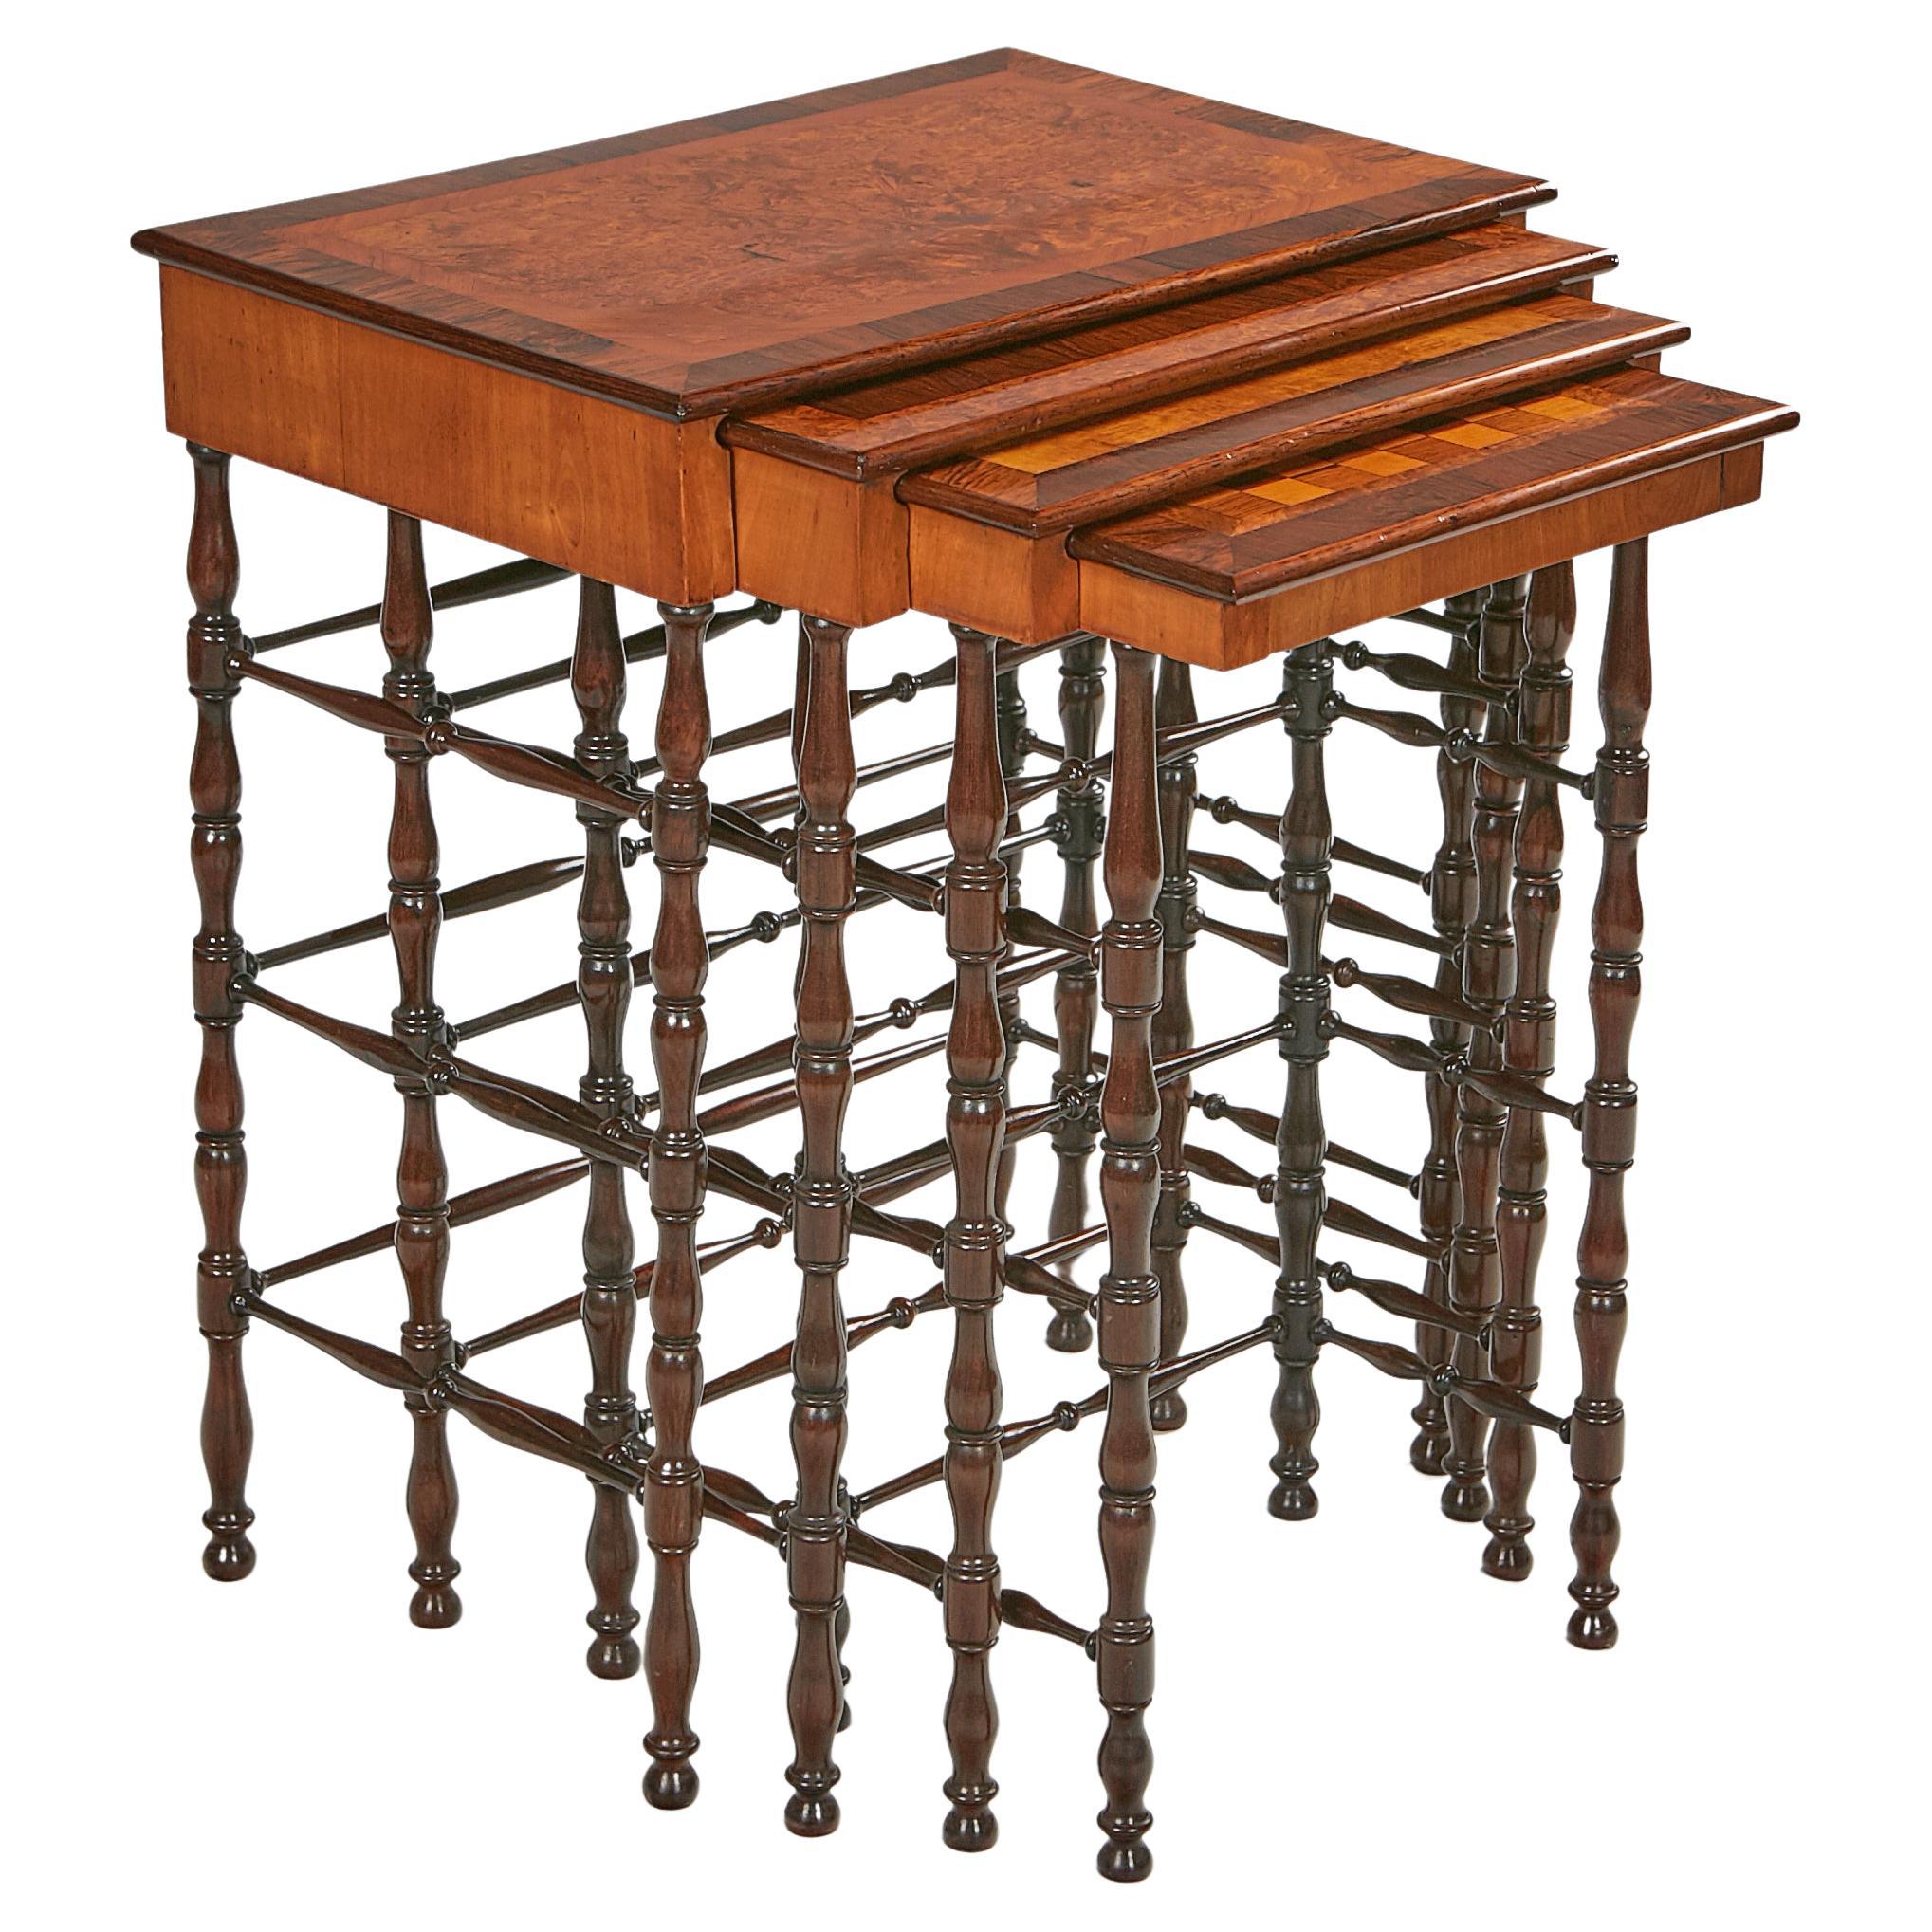 Tables en bois de style Régence anglaise du début du 19e siècle par Gillows of Lancaster